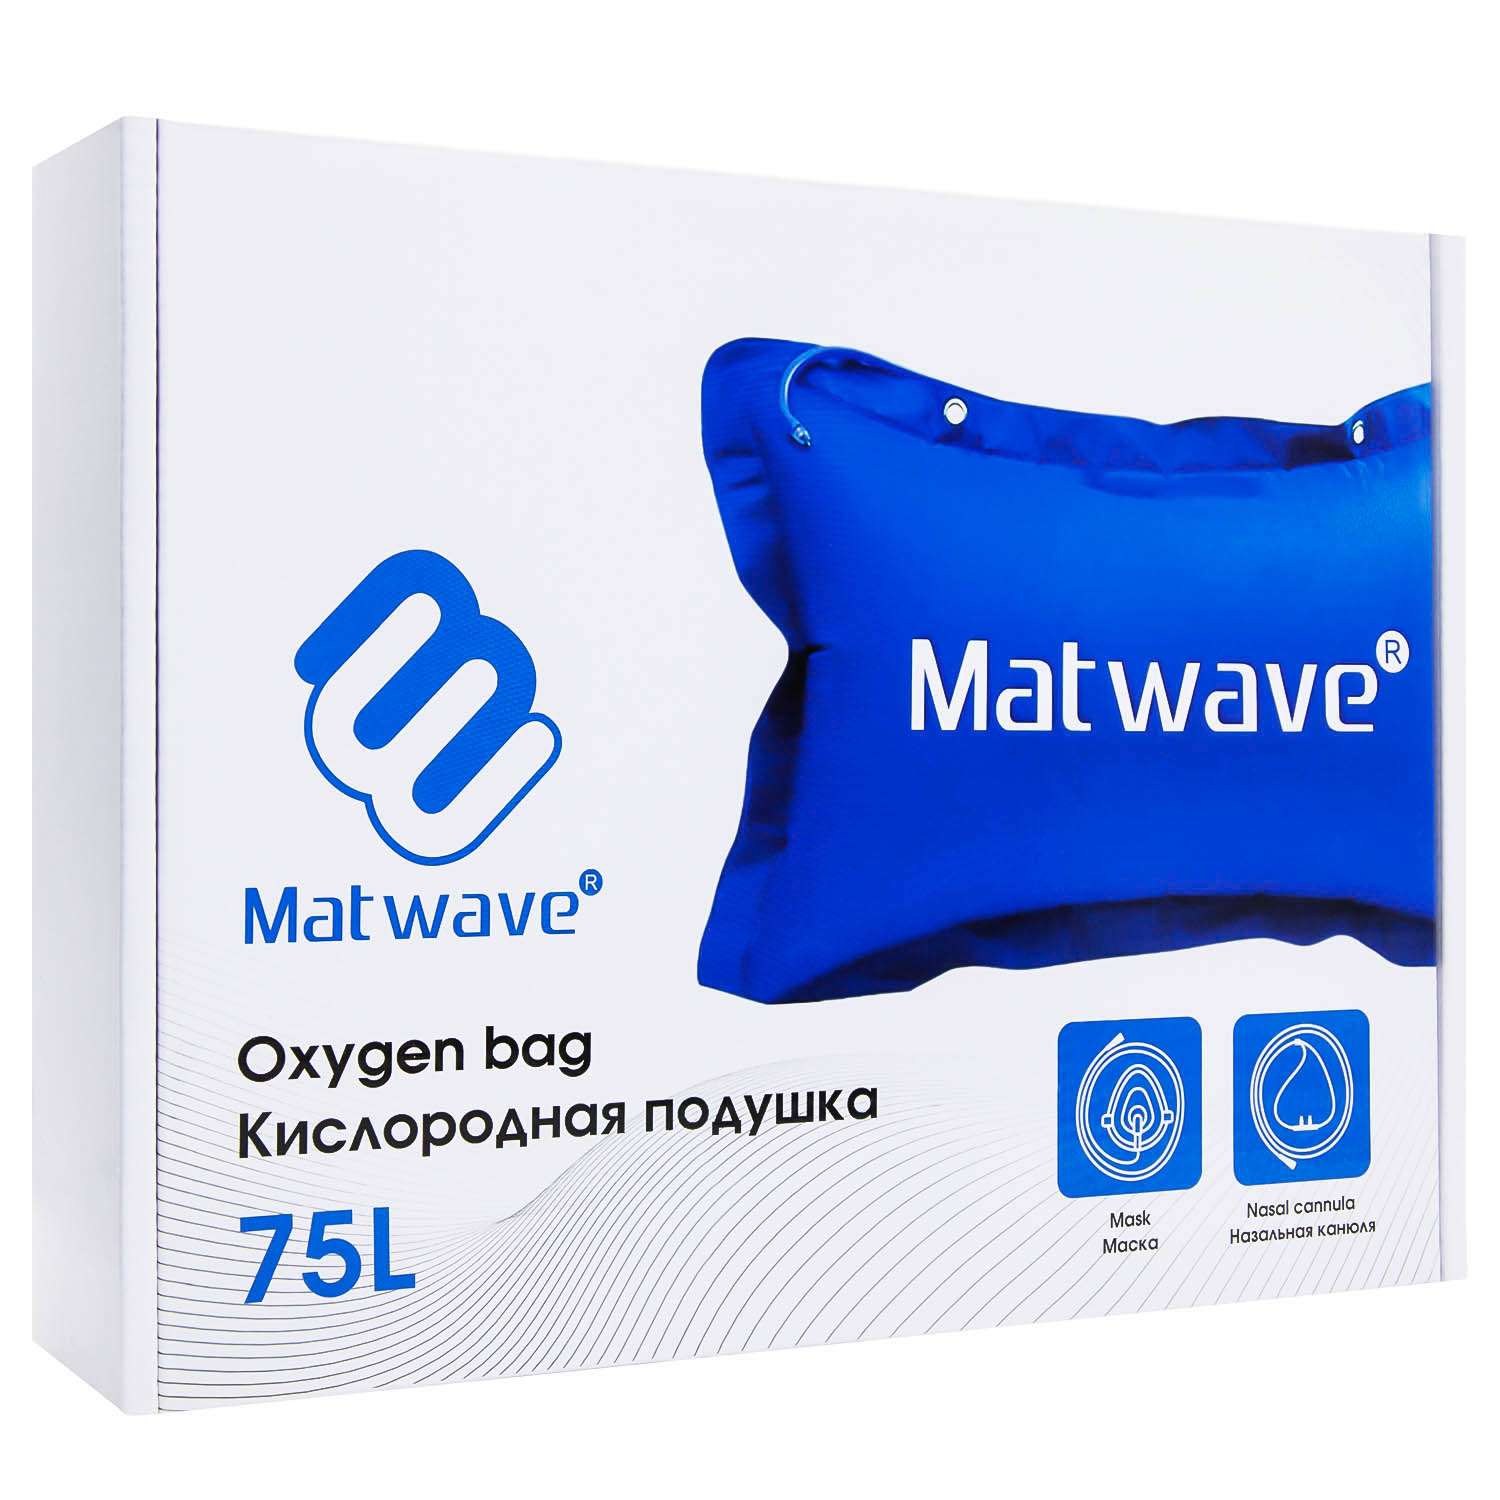 Кислородная подушка Matwave 75L + 2 маски + назальная канюля - фото 6